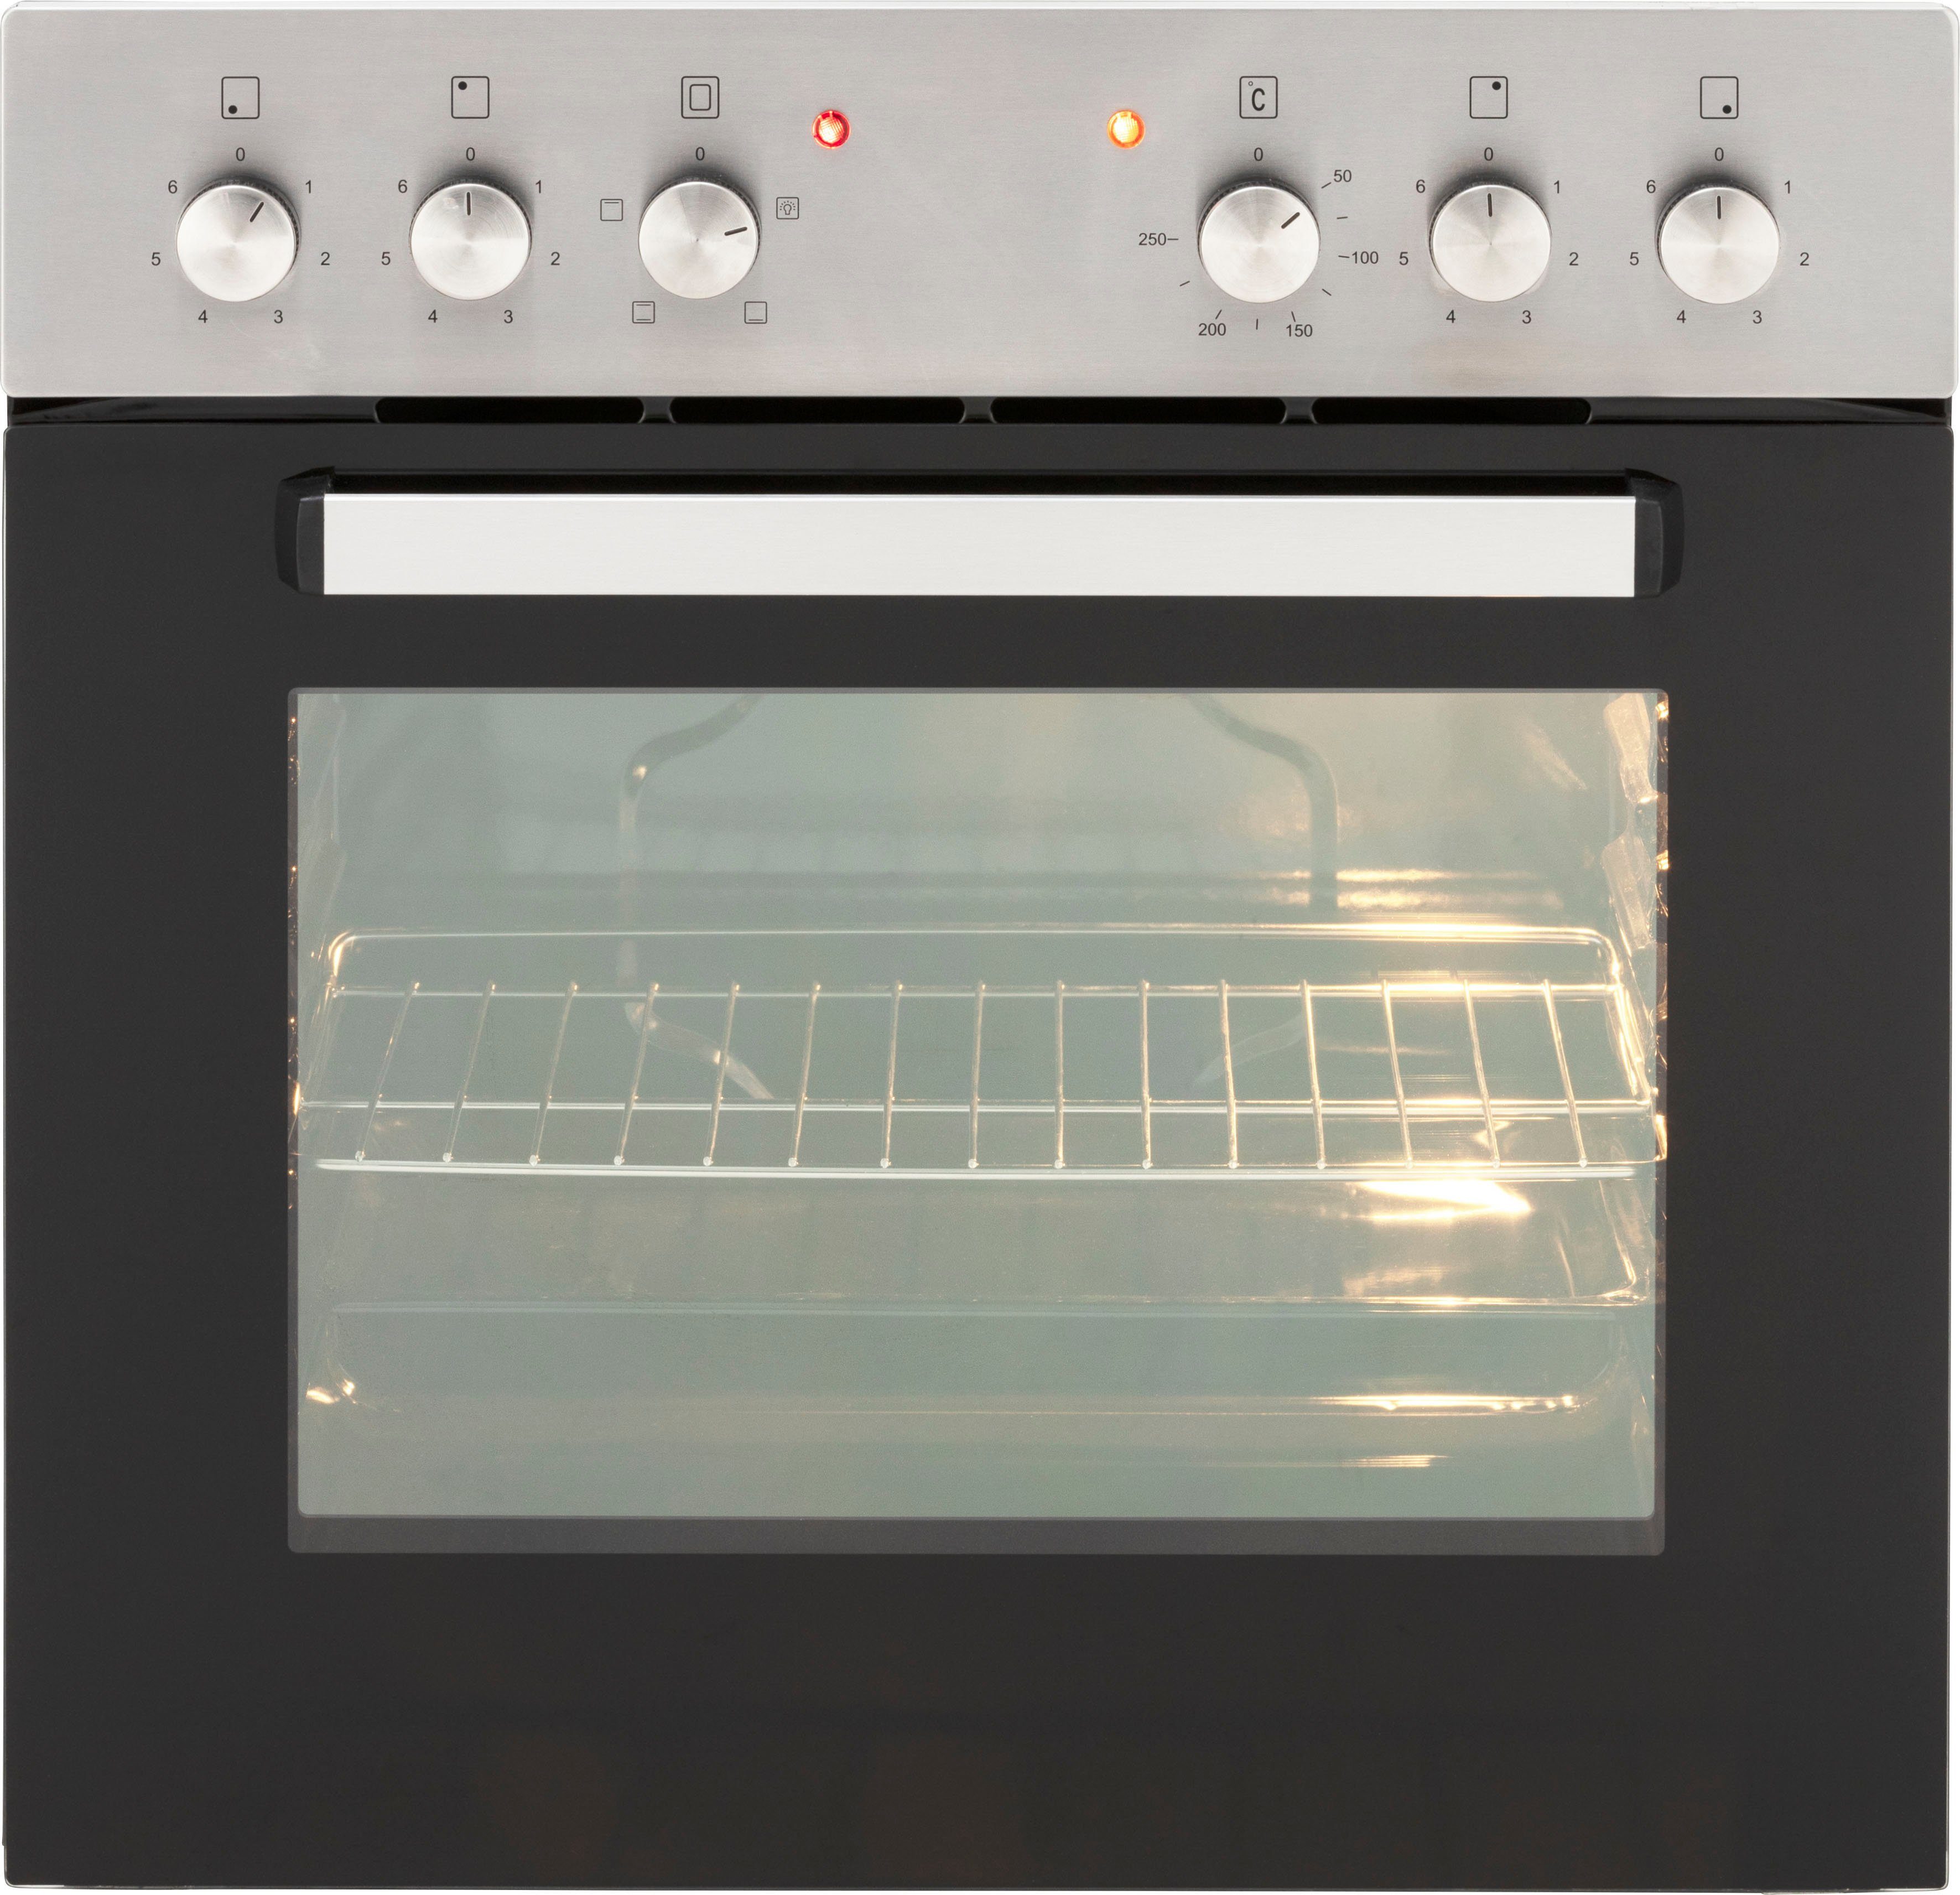 HELD MÖBEL Küchenzeile Brindisi, mit E-Geräten, Breite | weiß 280 cm wotaneichefarben Hochglanz/wotaneichefarbe